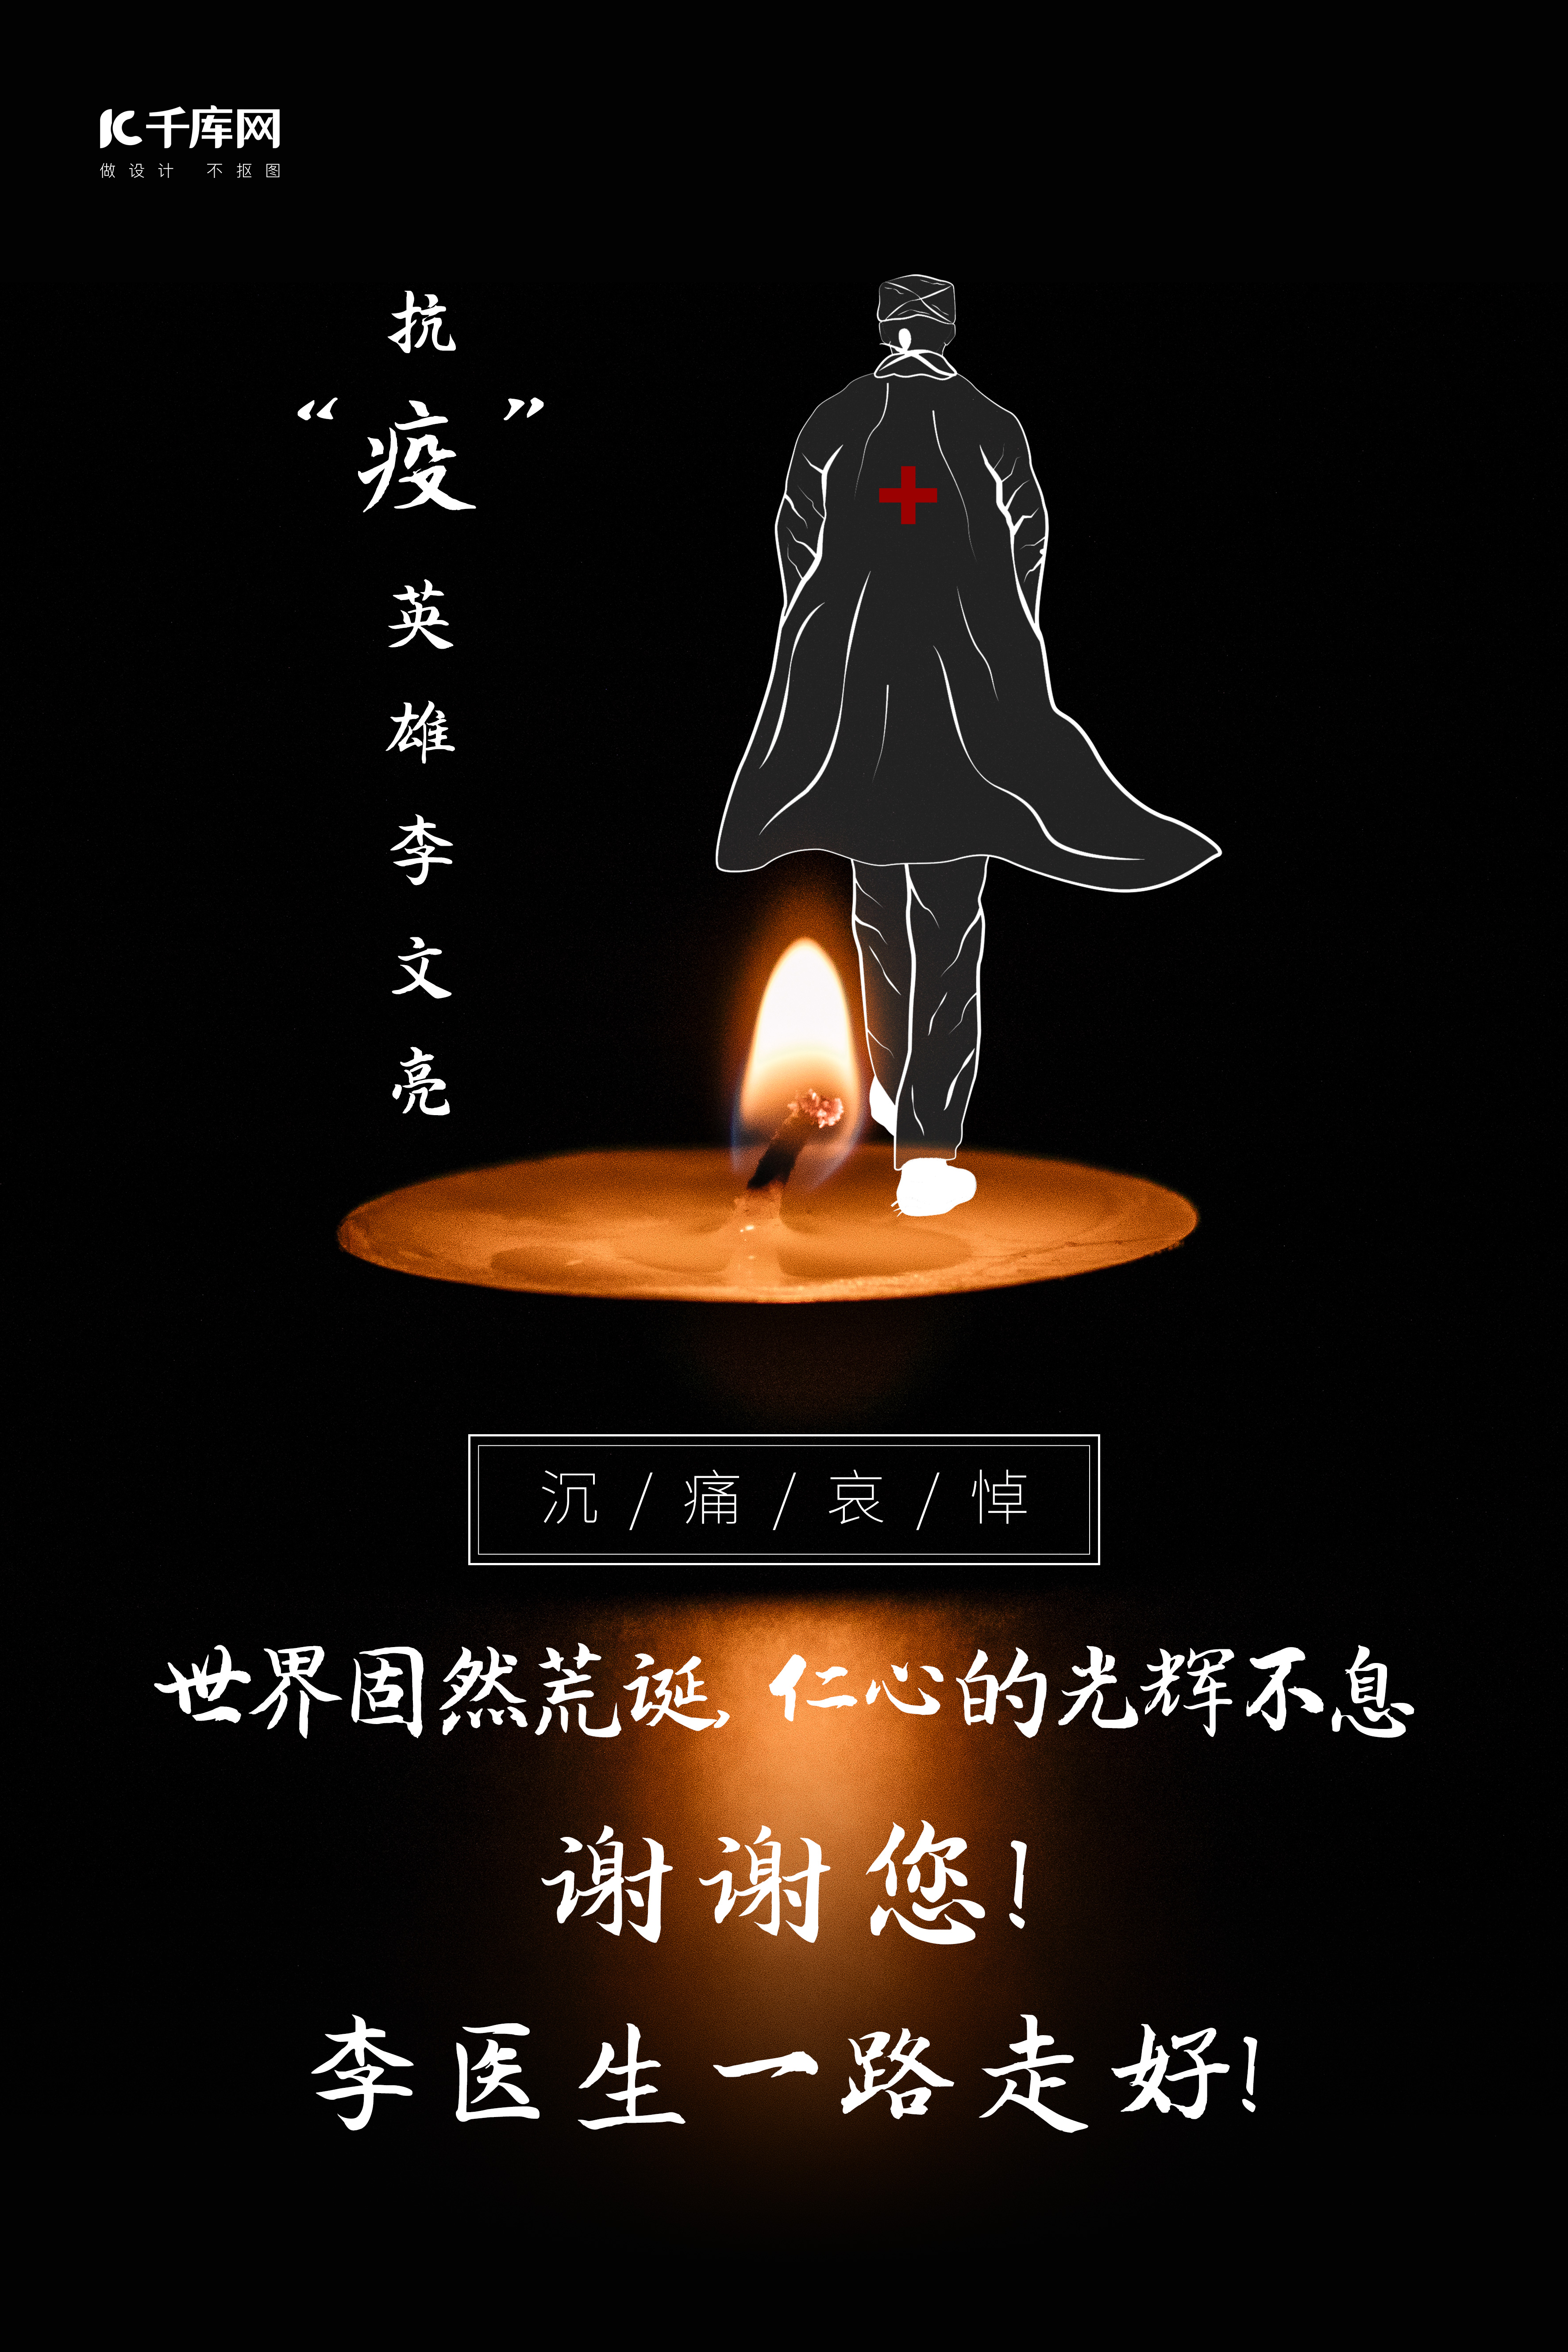 抗疫英雄林文亮蜡烛黑色简约风格海报图片